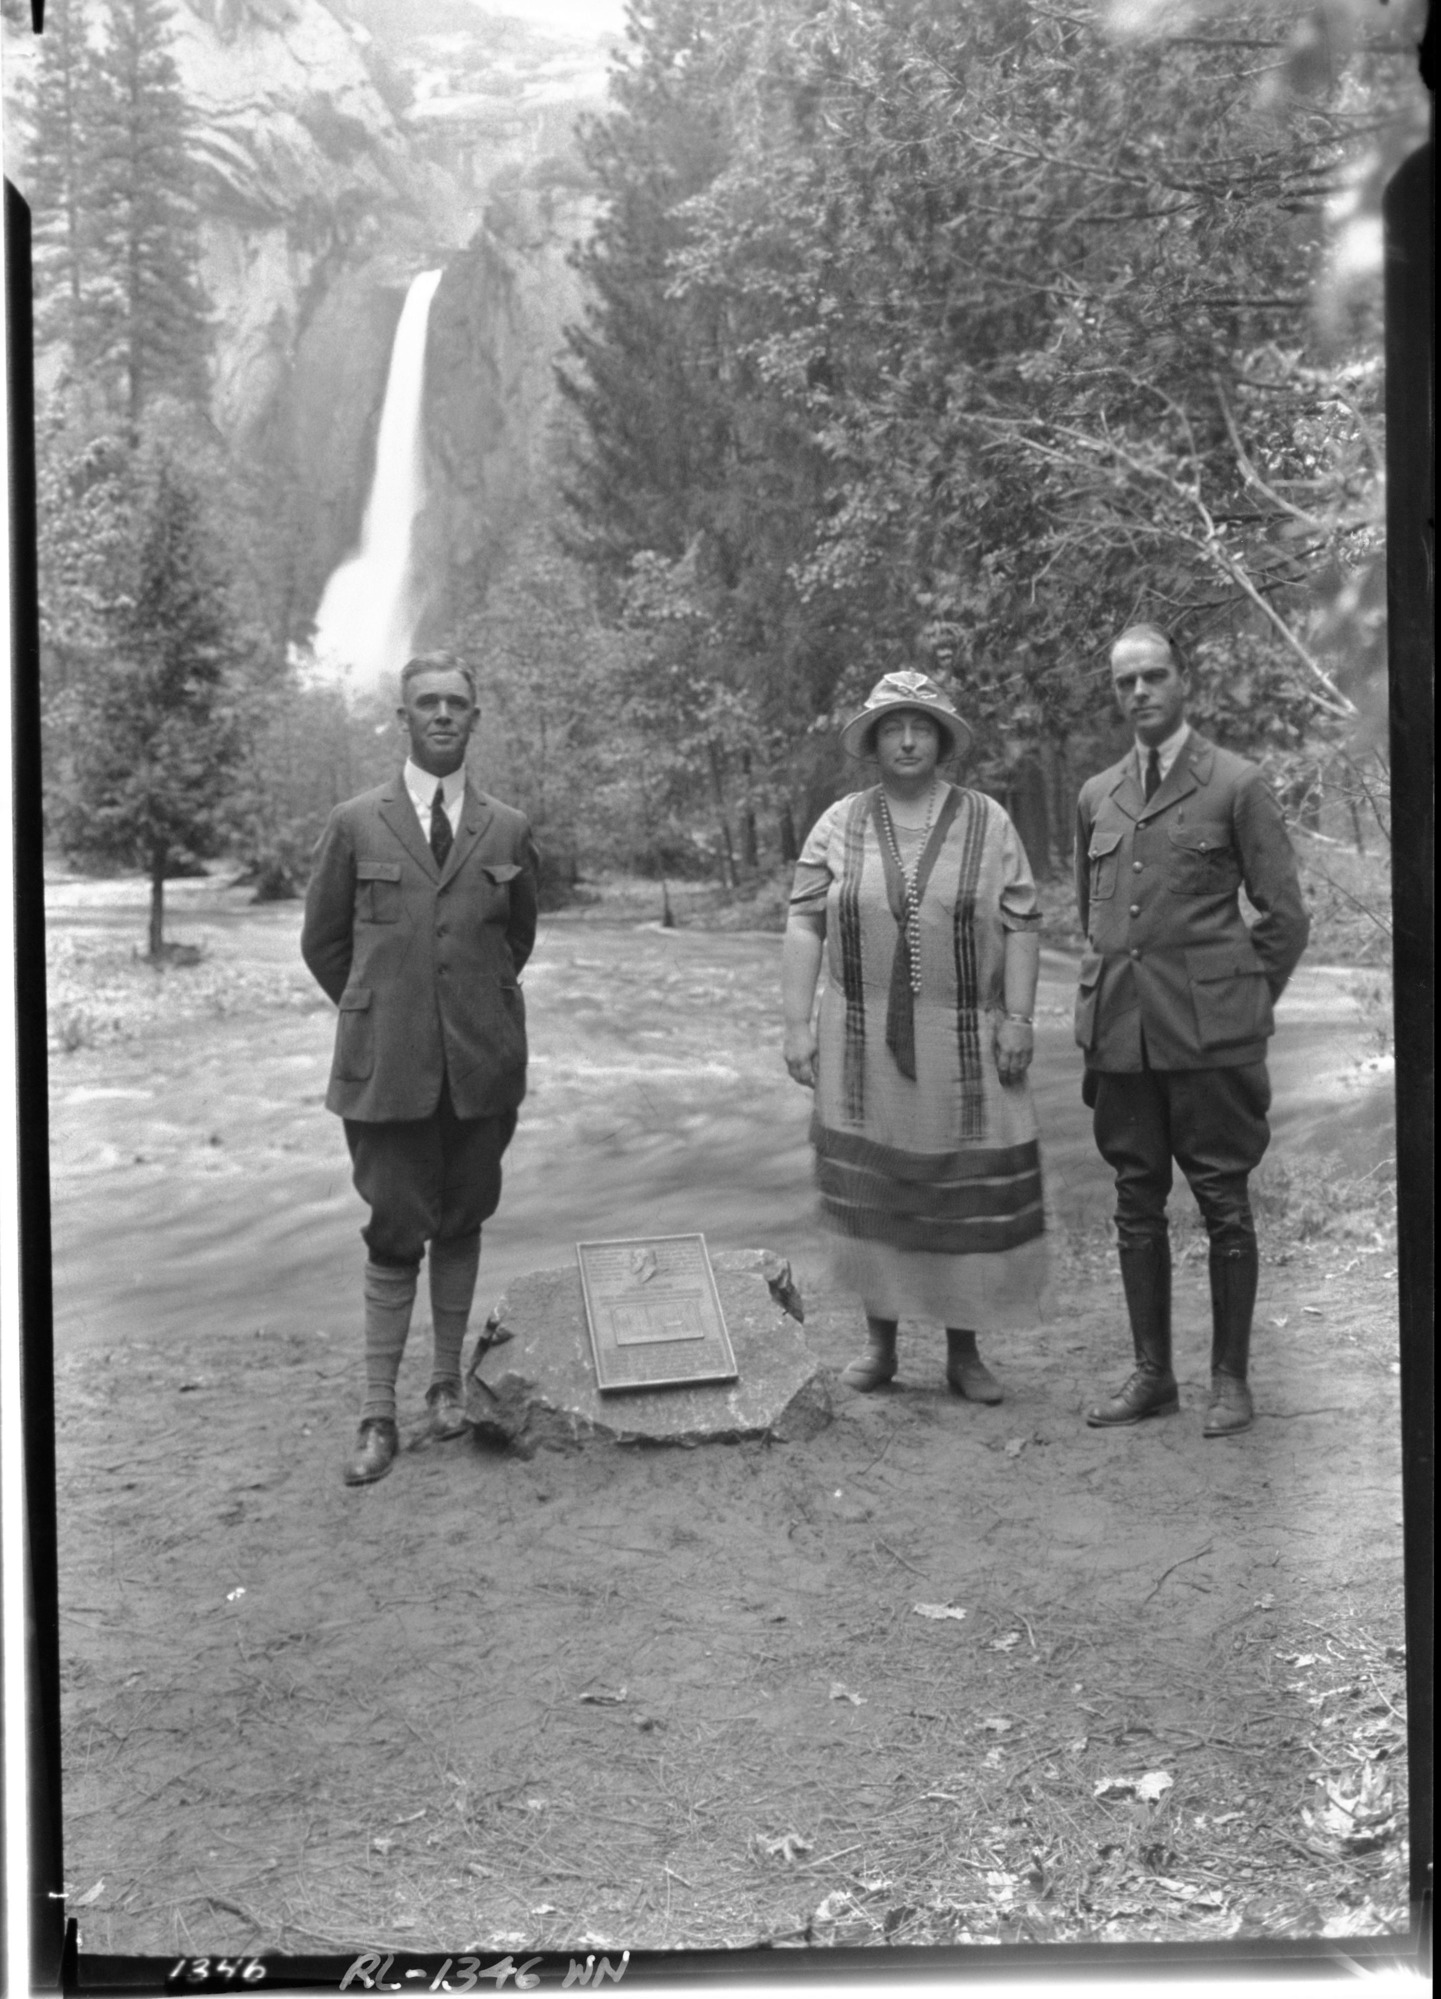 Dedication of John Muir plaque on Yosemite Falls trail. L-R: Prof. Bade, Muir's Daughter [Wanda], Supt. Lewis.